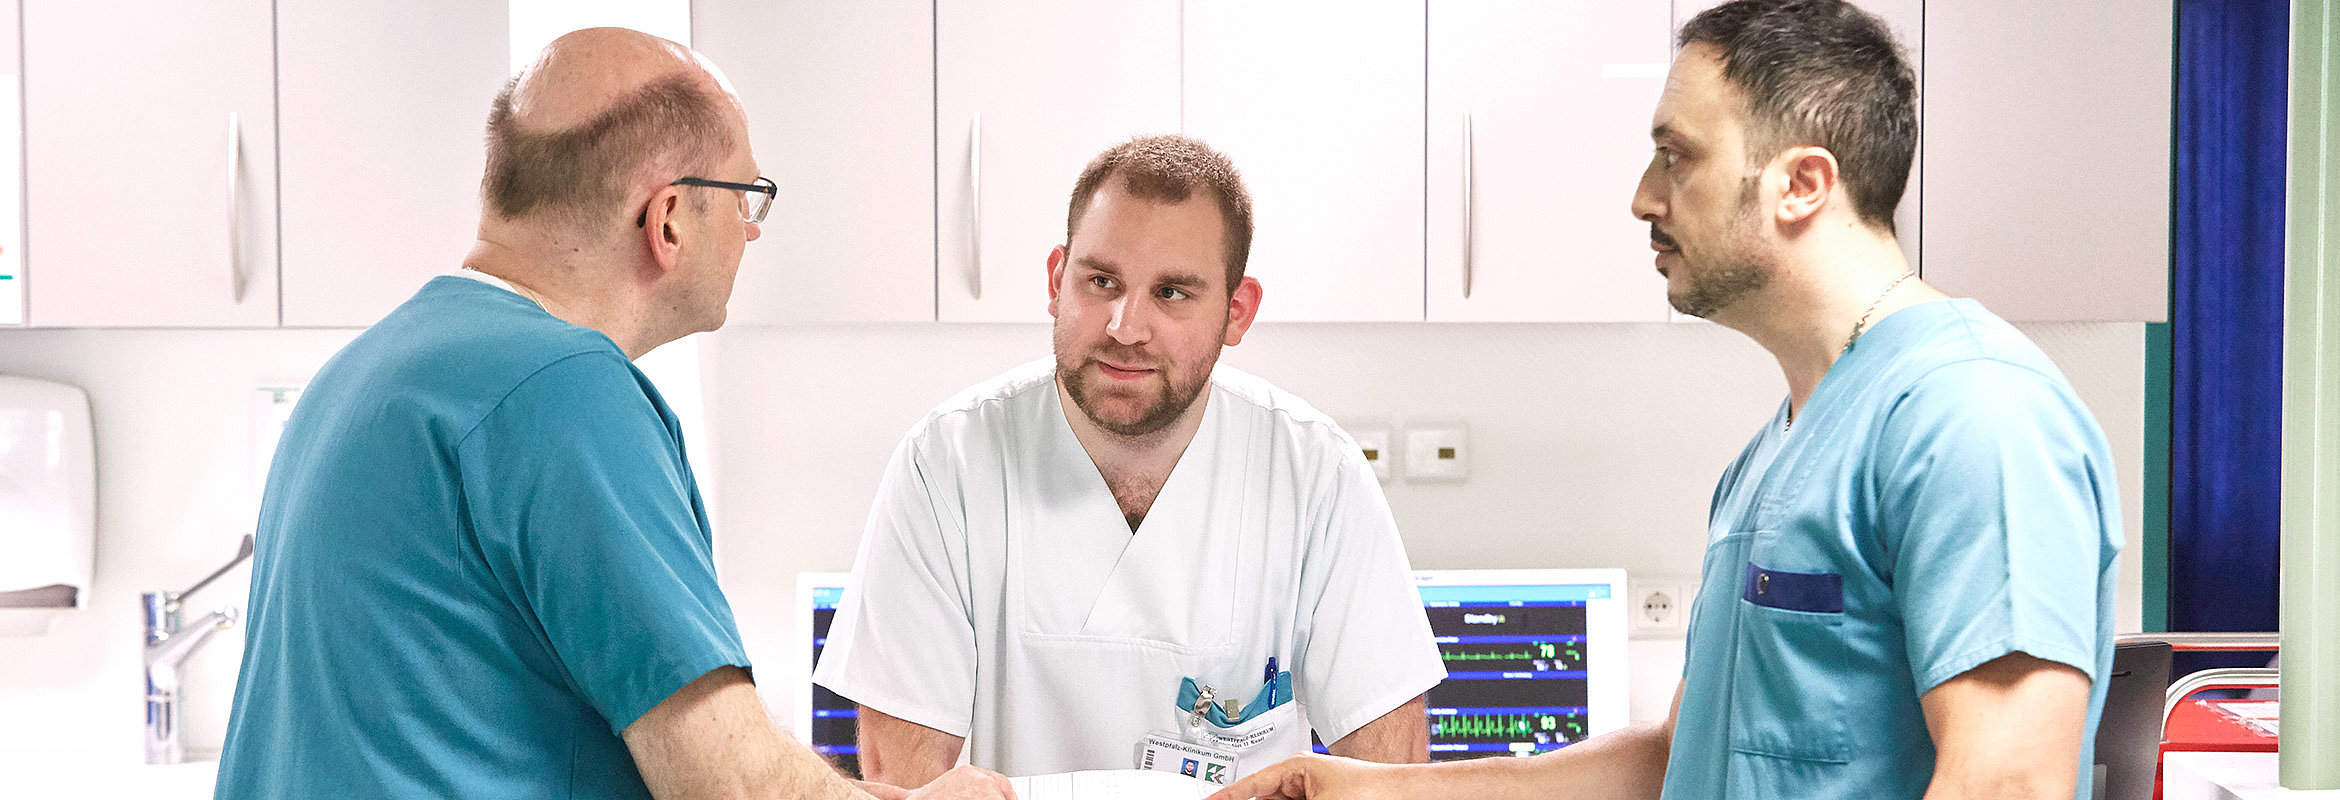 Dr. med. Heiko Bittmann, Chefarzt der Klinik für neurologische und neurochirurgische Frührehabilitation in Kusel, im Gespräch mit seinen Mitarbeitenden